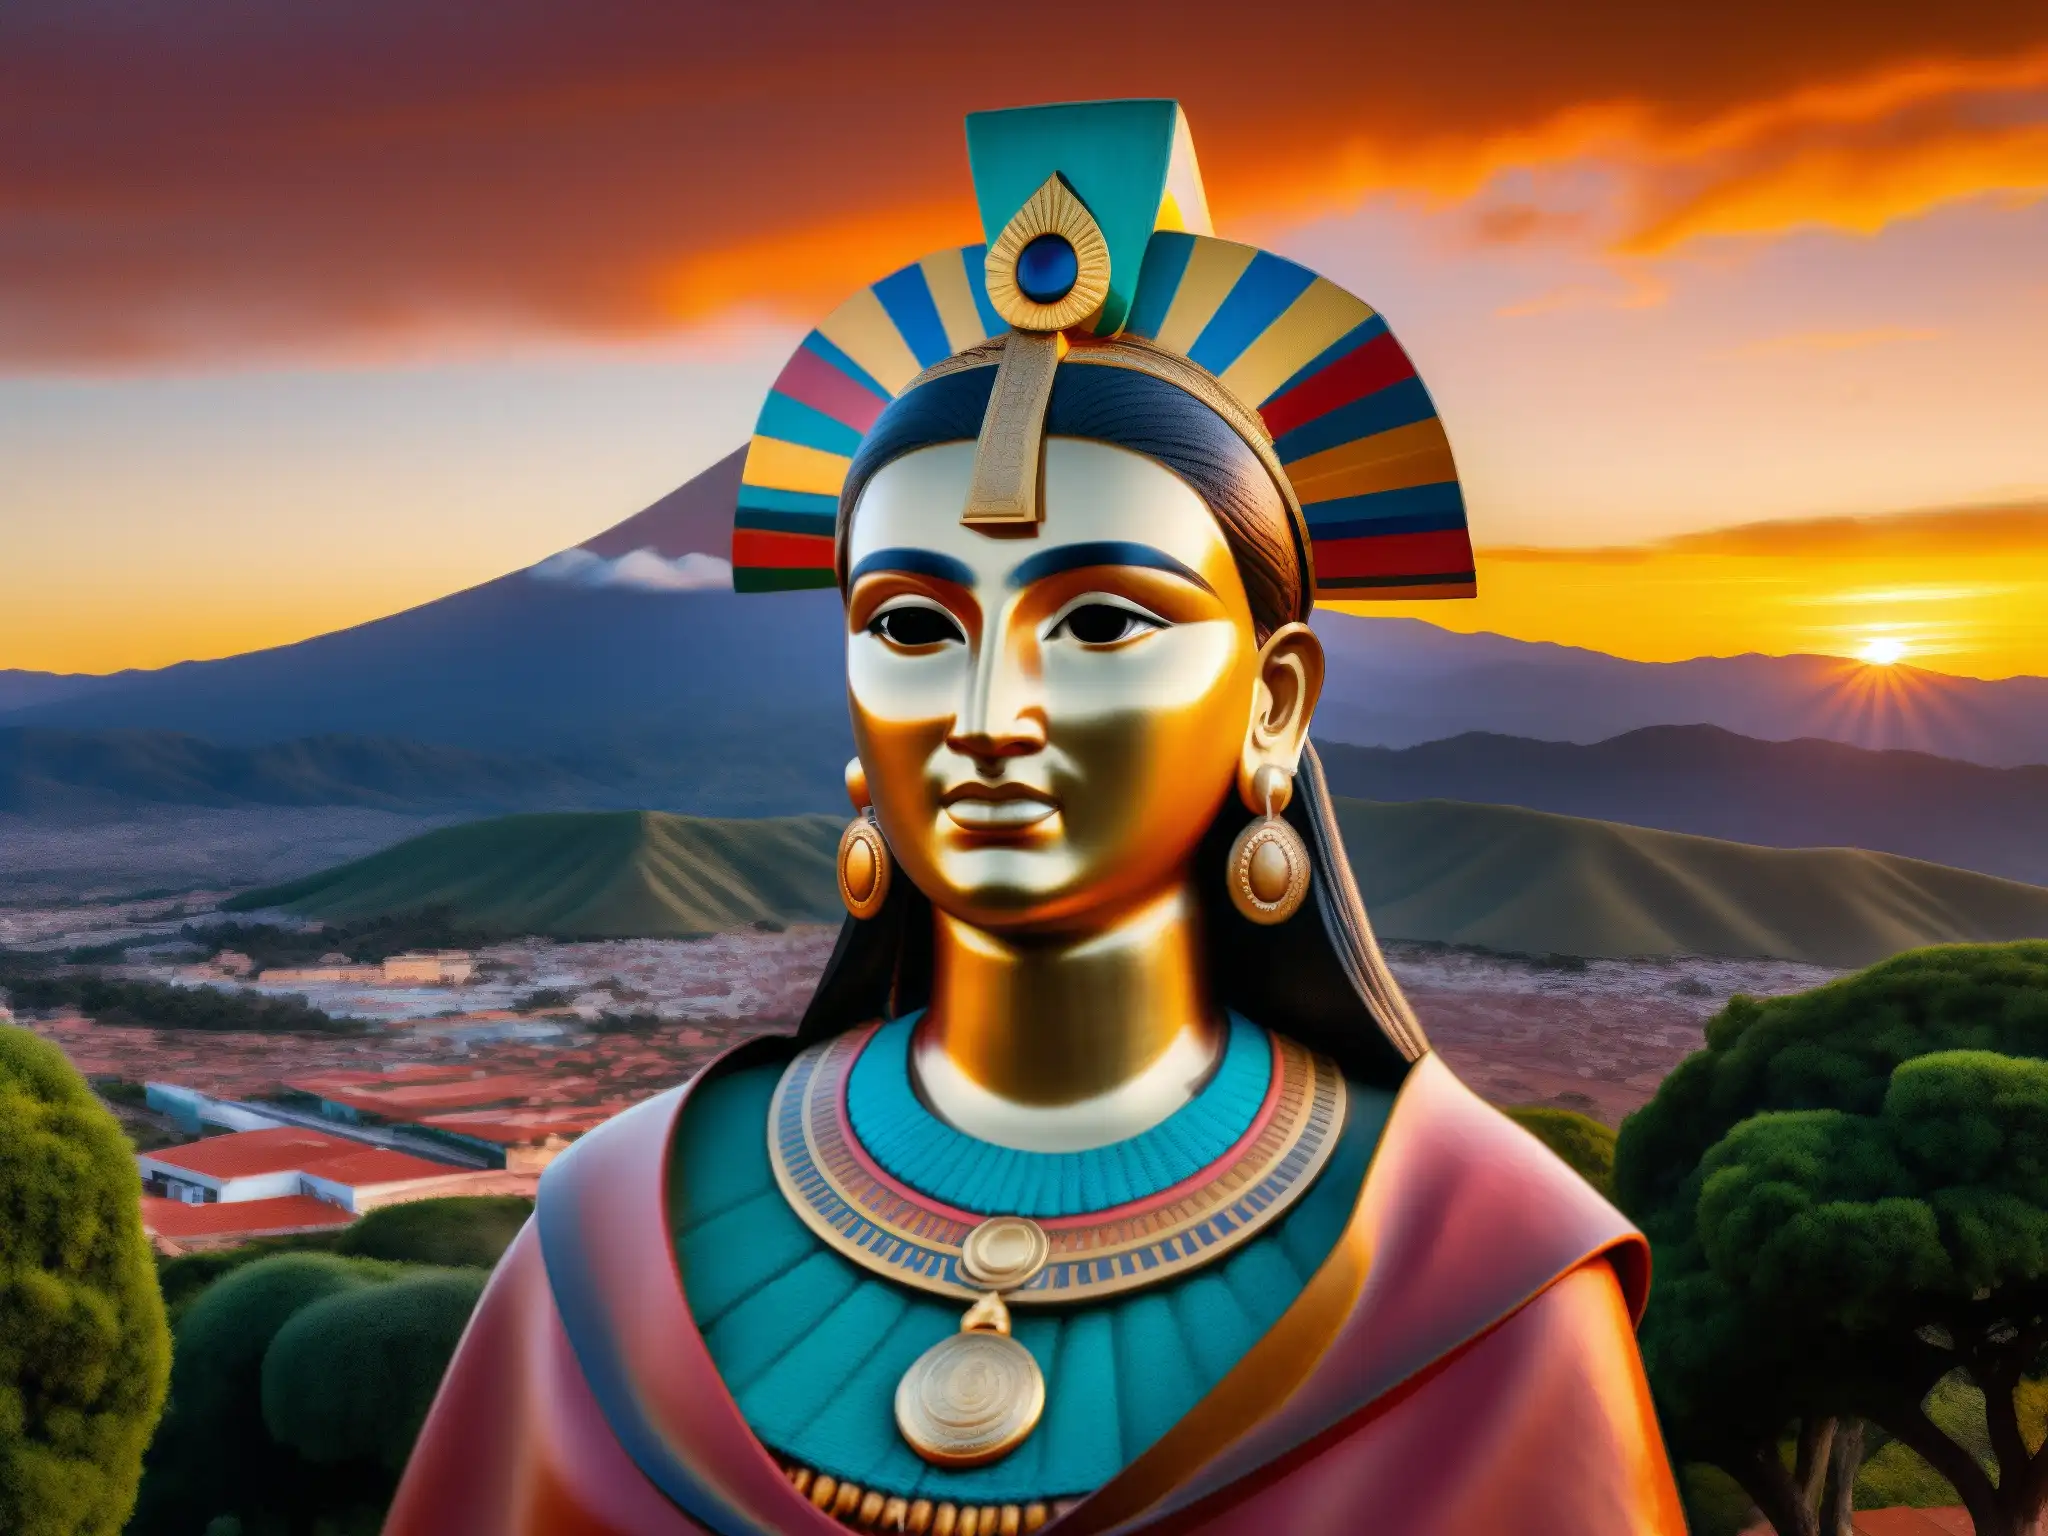 Estatua de La Malinche con atardecer vibrante, expresión facial detallada y paisaje impactante, capturando su complejo legado